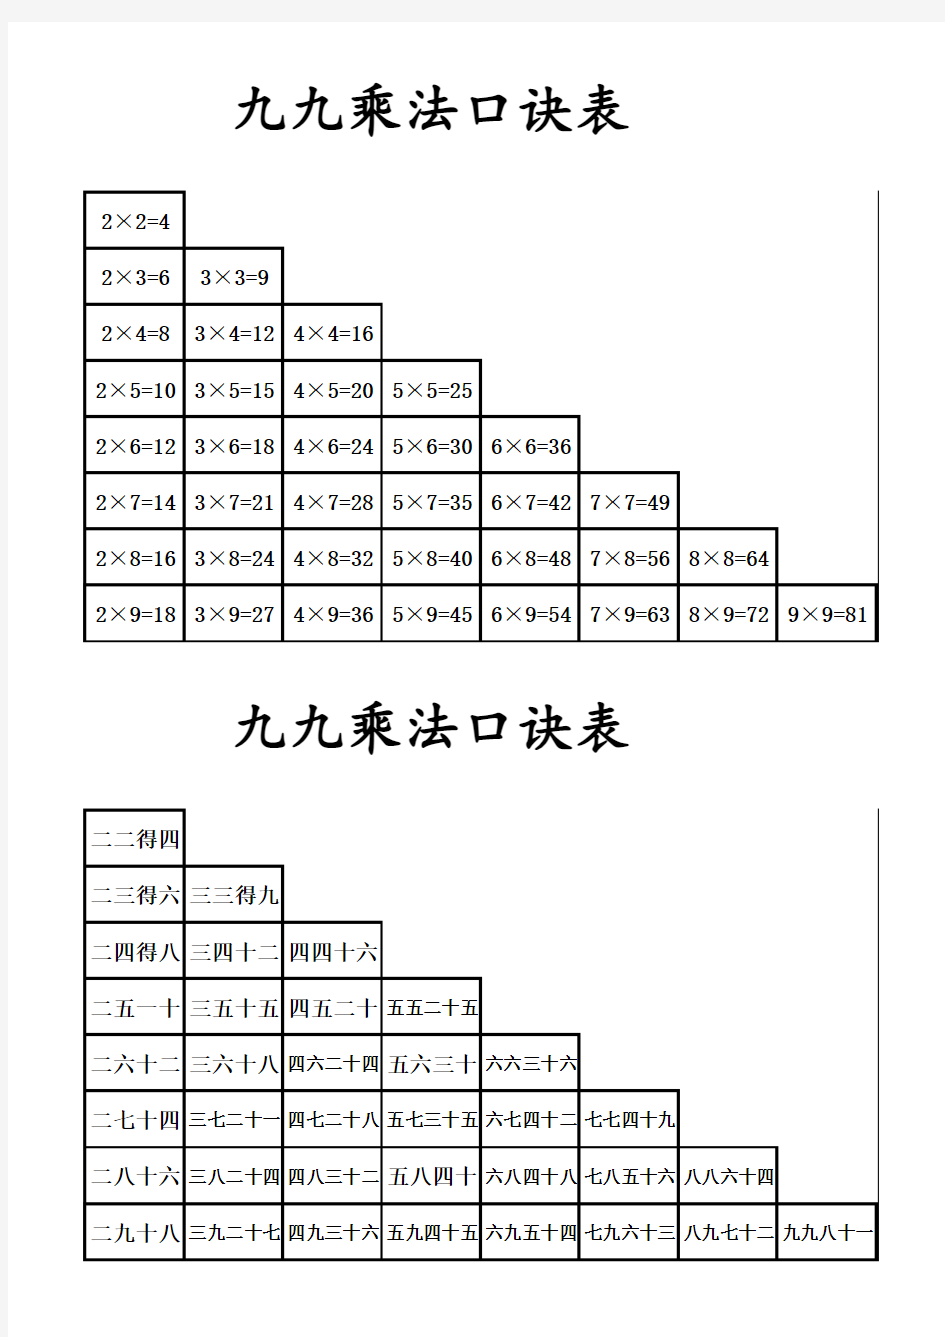 人教版20以内进位加减法口诀表与乘法口诀表(A4)